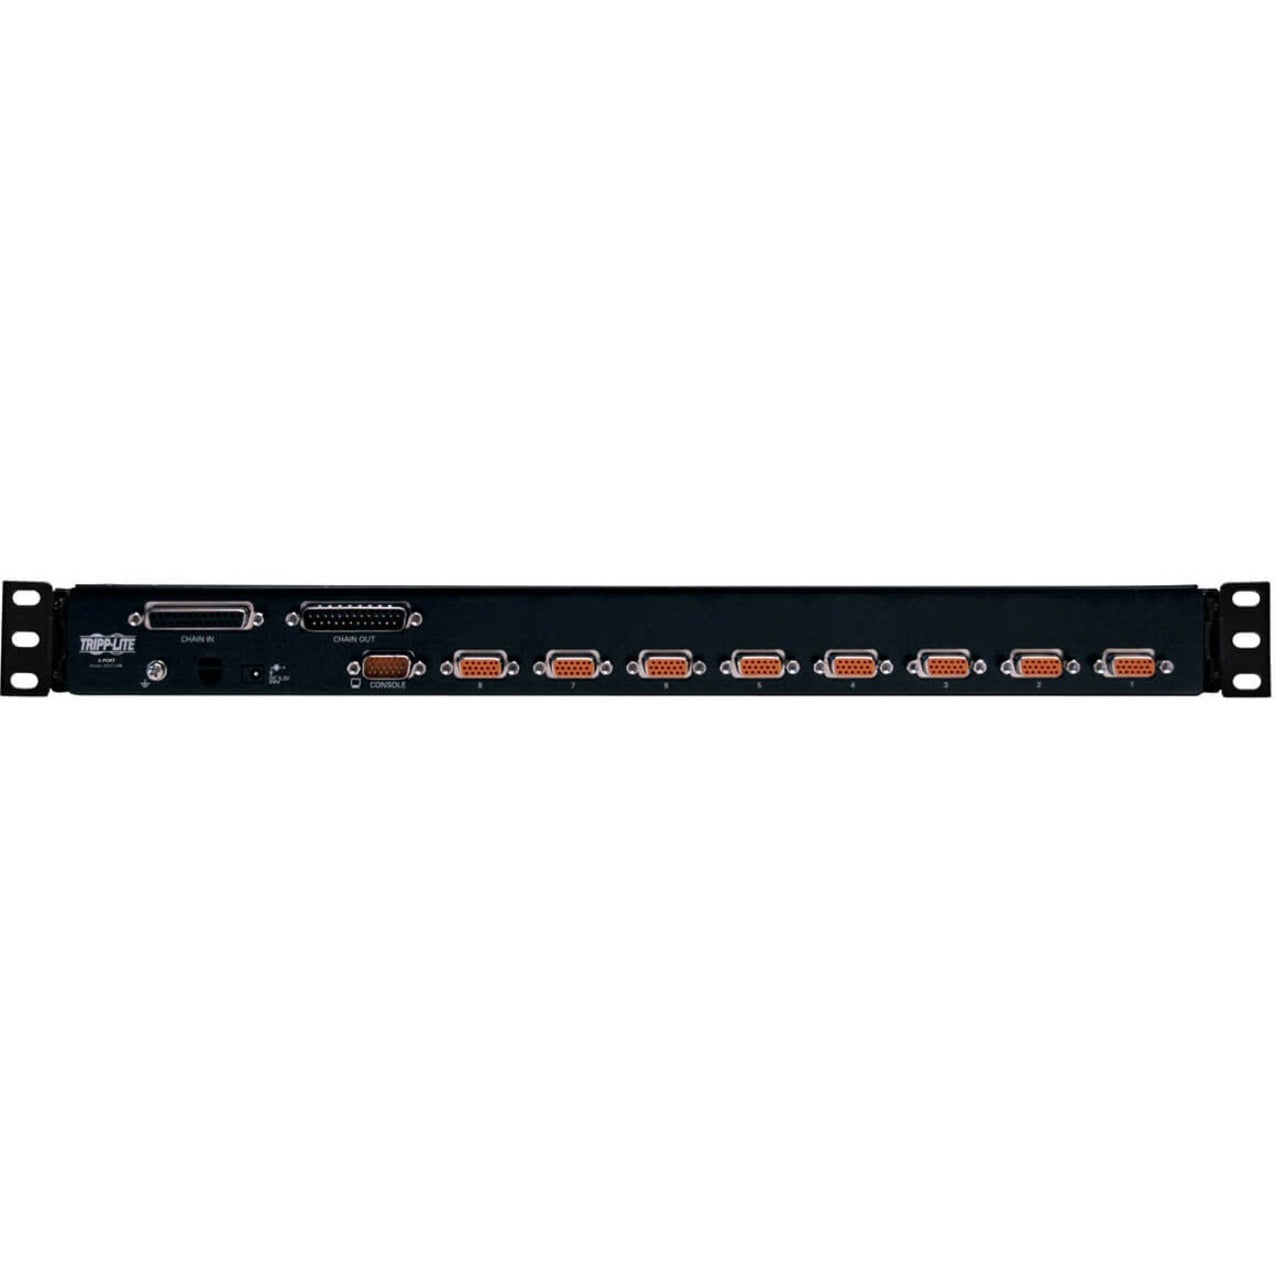 Tripp Lite B022-U08 NetDirector 8-Port 1U Rack-Mount KVM Switch, USB, 2048 x 1536 Resolution, 3 Year Warranty